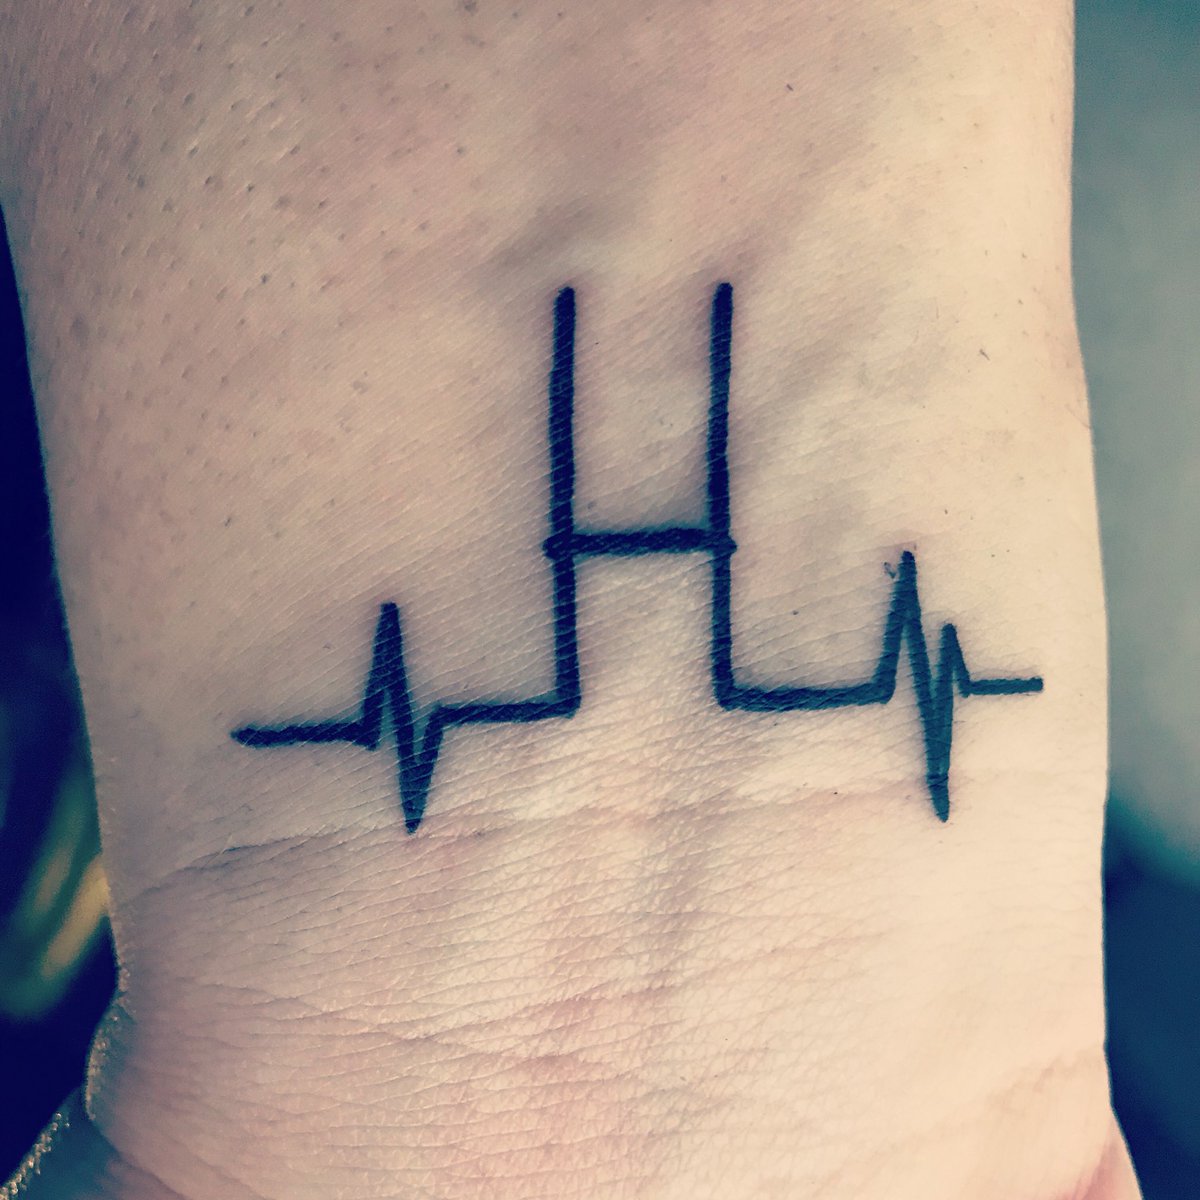 Musical Note Heartbeat Tattoo by neilcollinsartist on DeviantArt